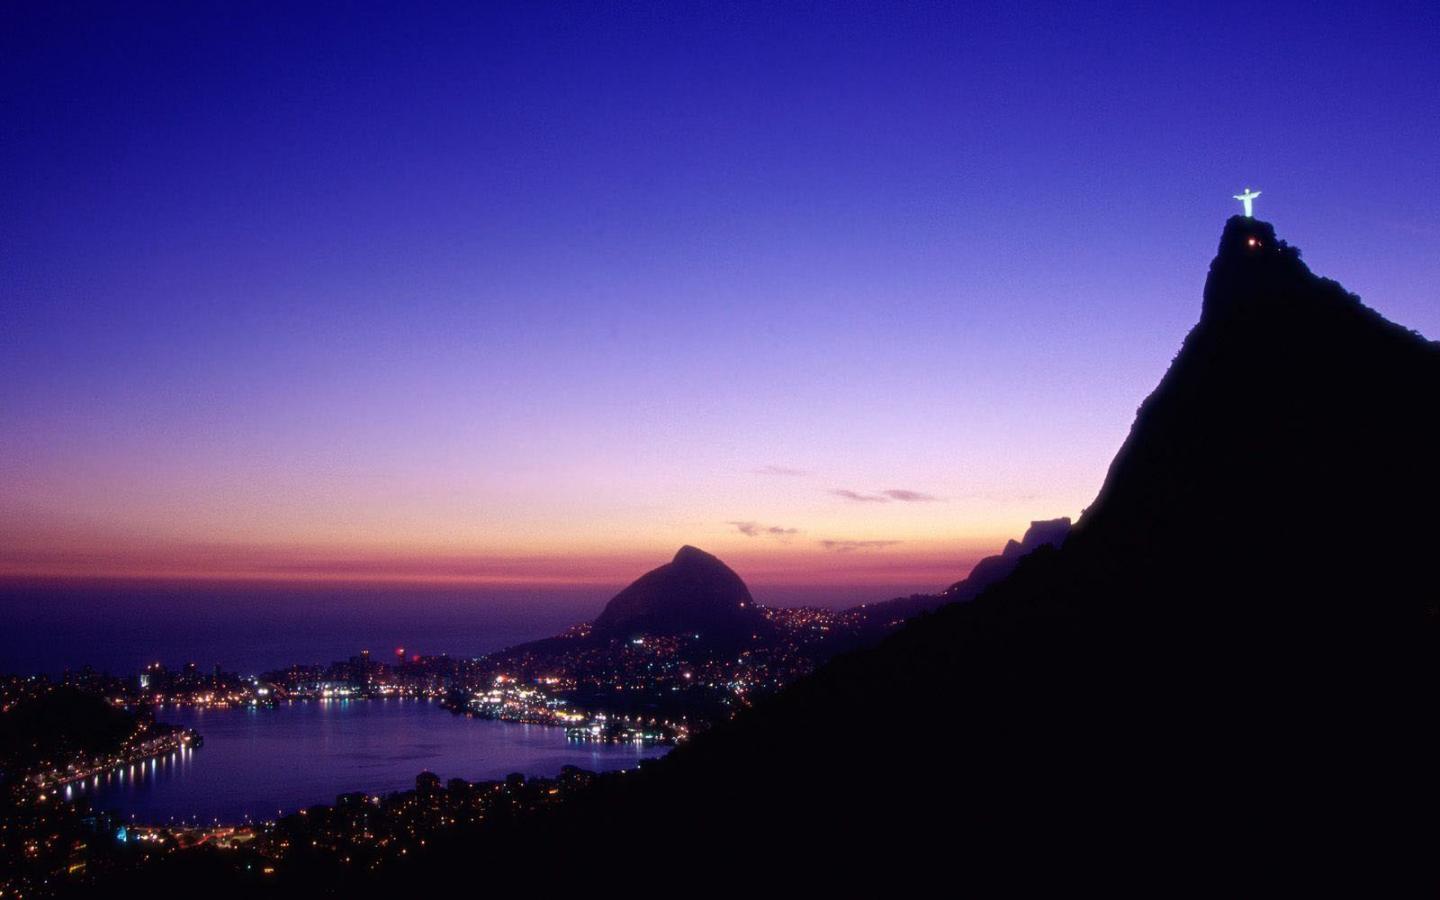 Janeiro Brazil X Widescreen Desktop Wallpaper And Photos